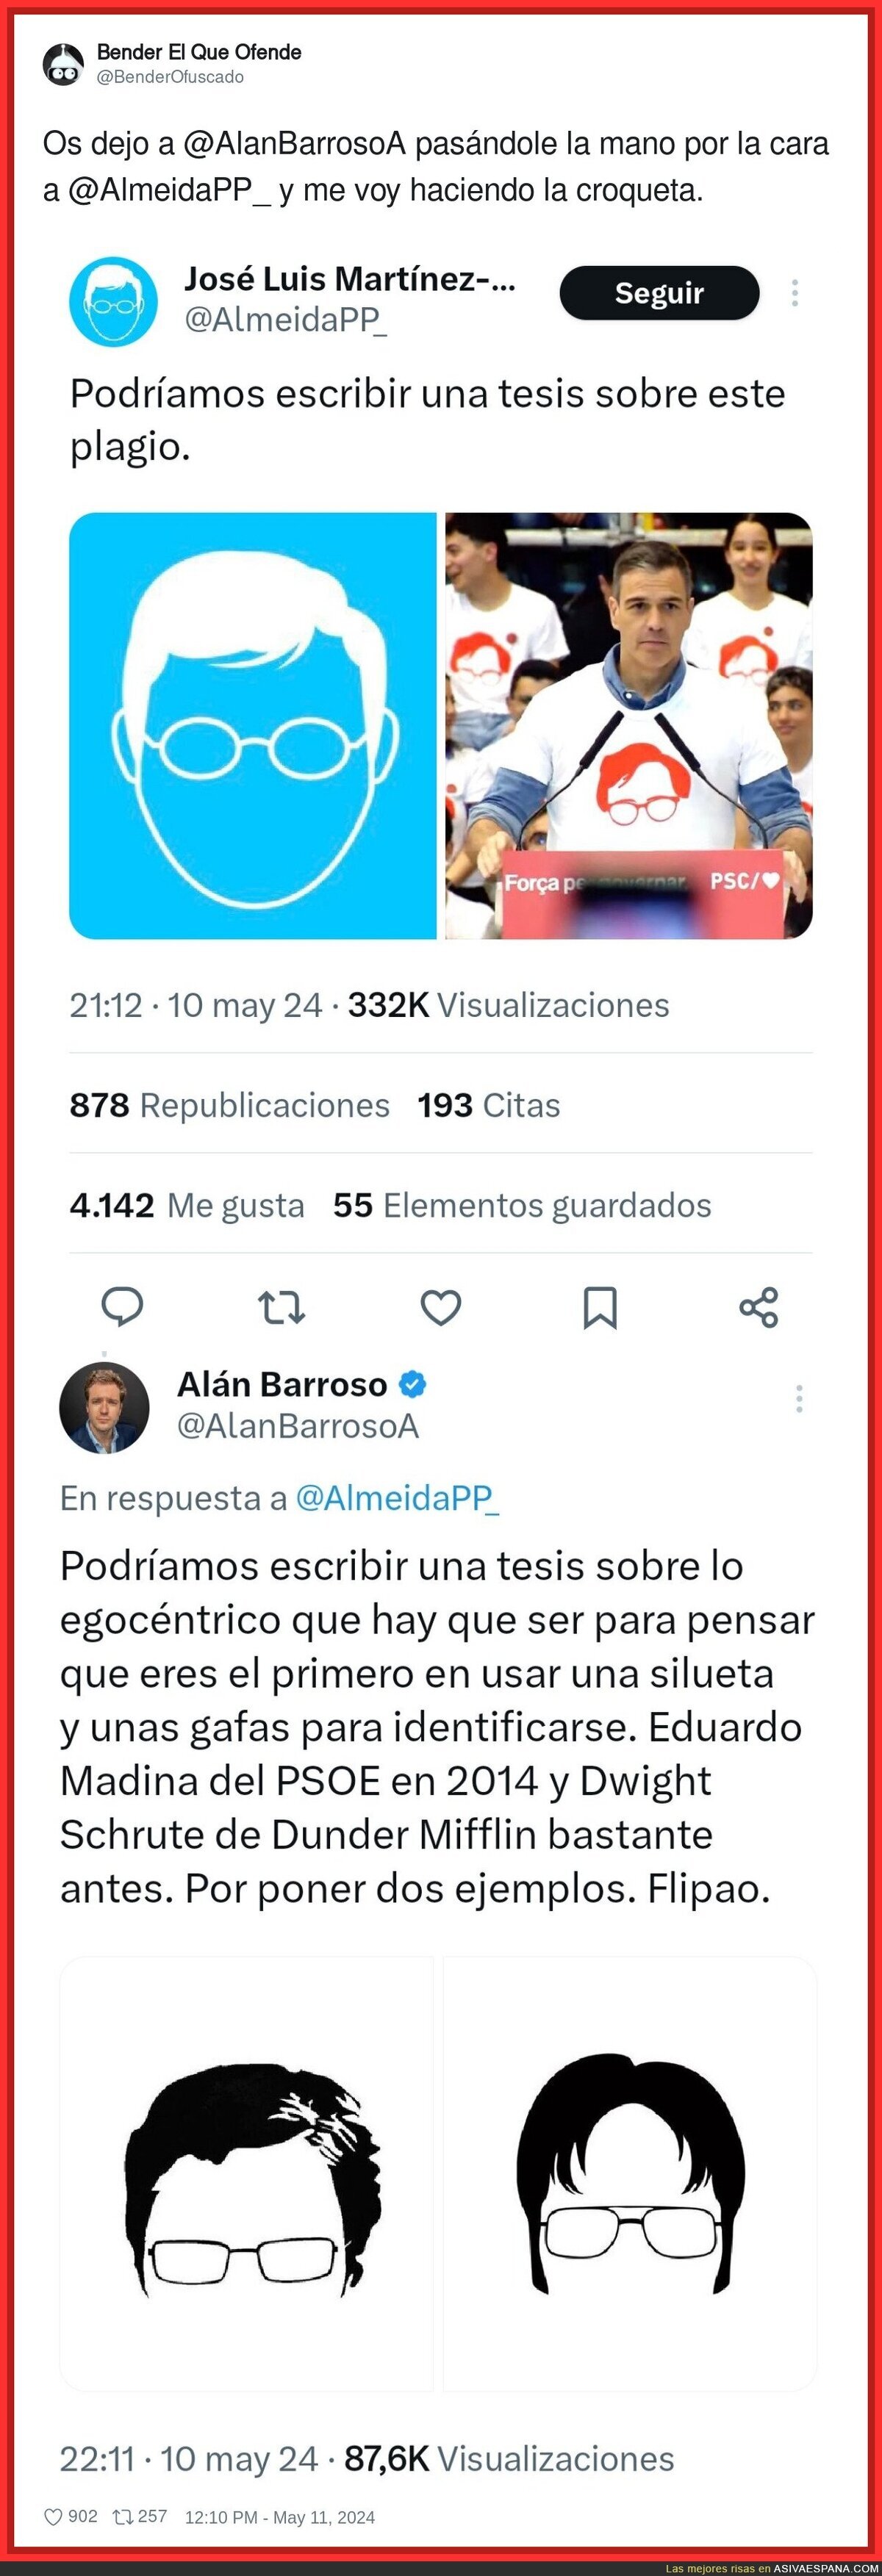 José Luis Martínez Almeida hace el ridículo al decir que Pedro Sánchez es un plagiador